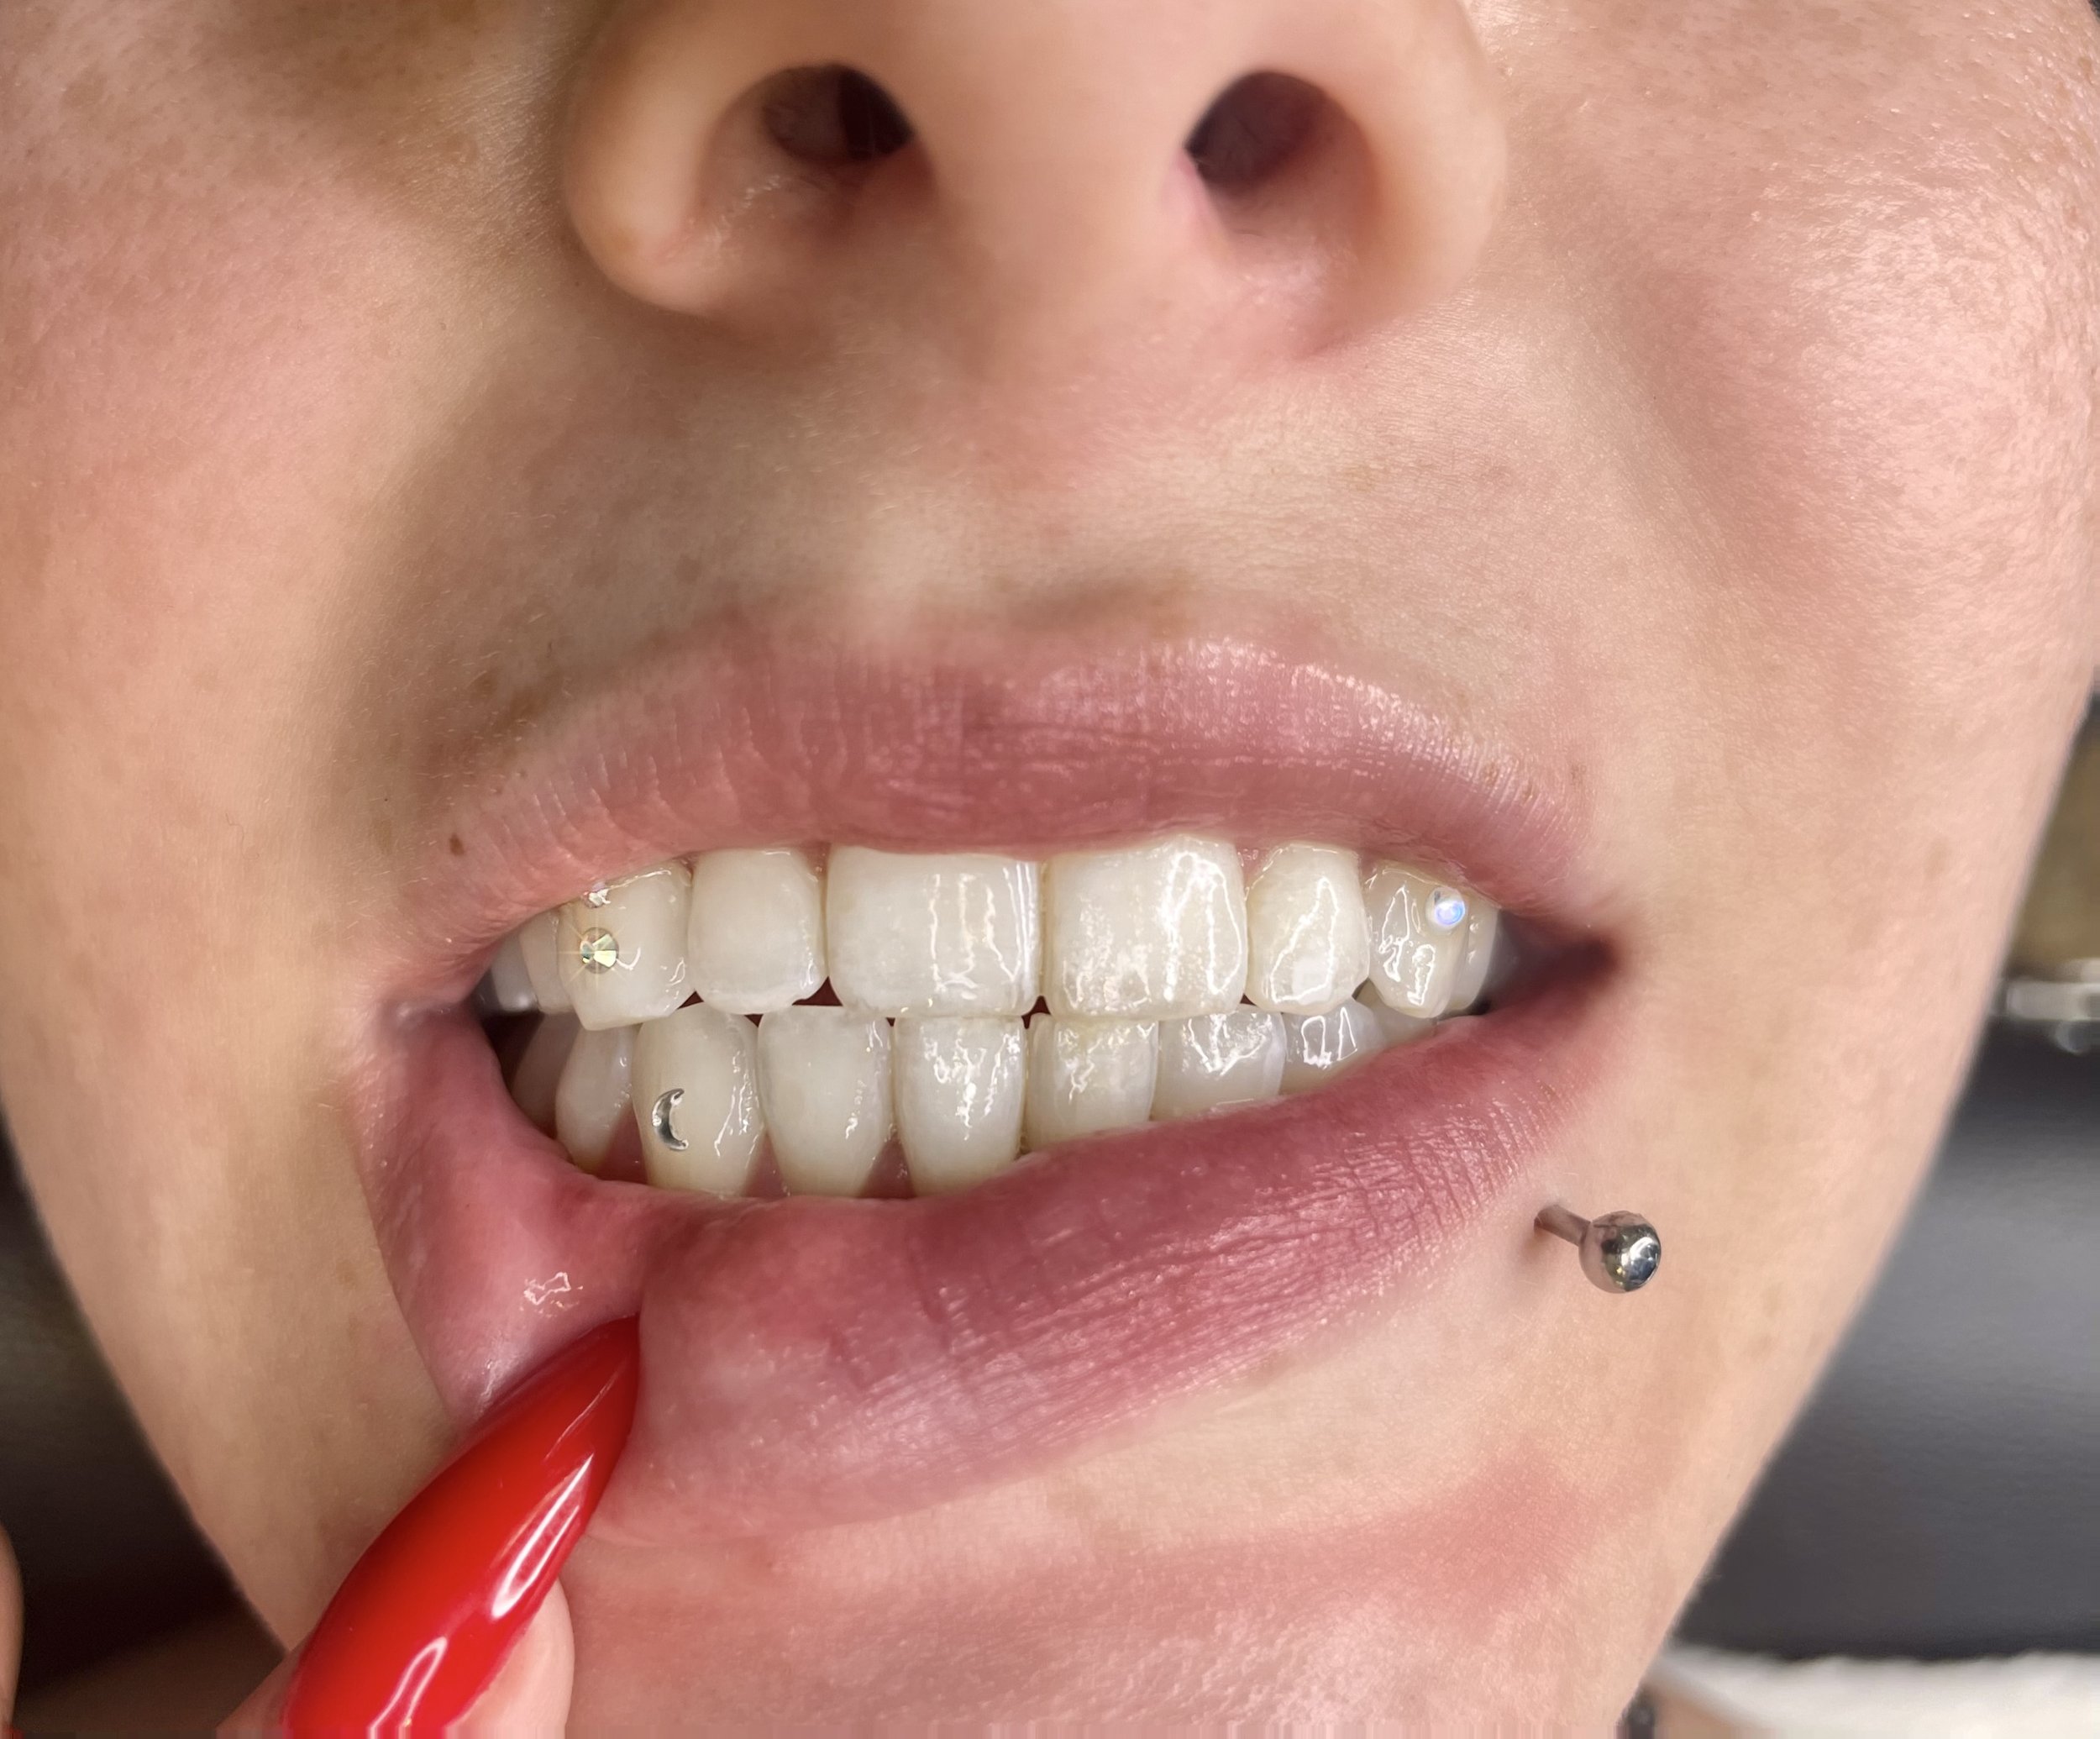 Best Tooth Gems in Edmonton  Studio Vanassa Tooth Gems — STUDIO VANASSA